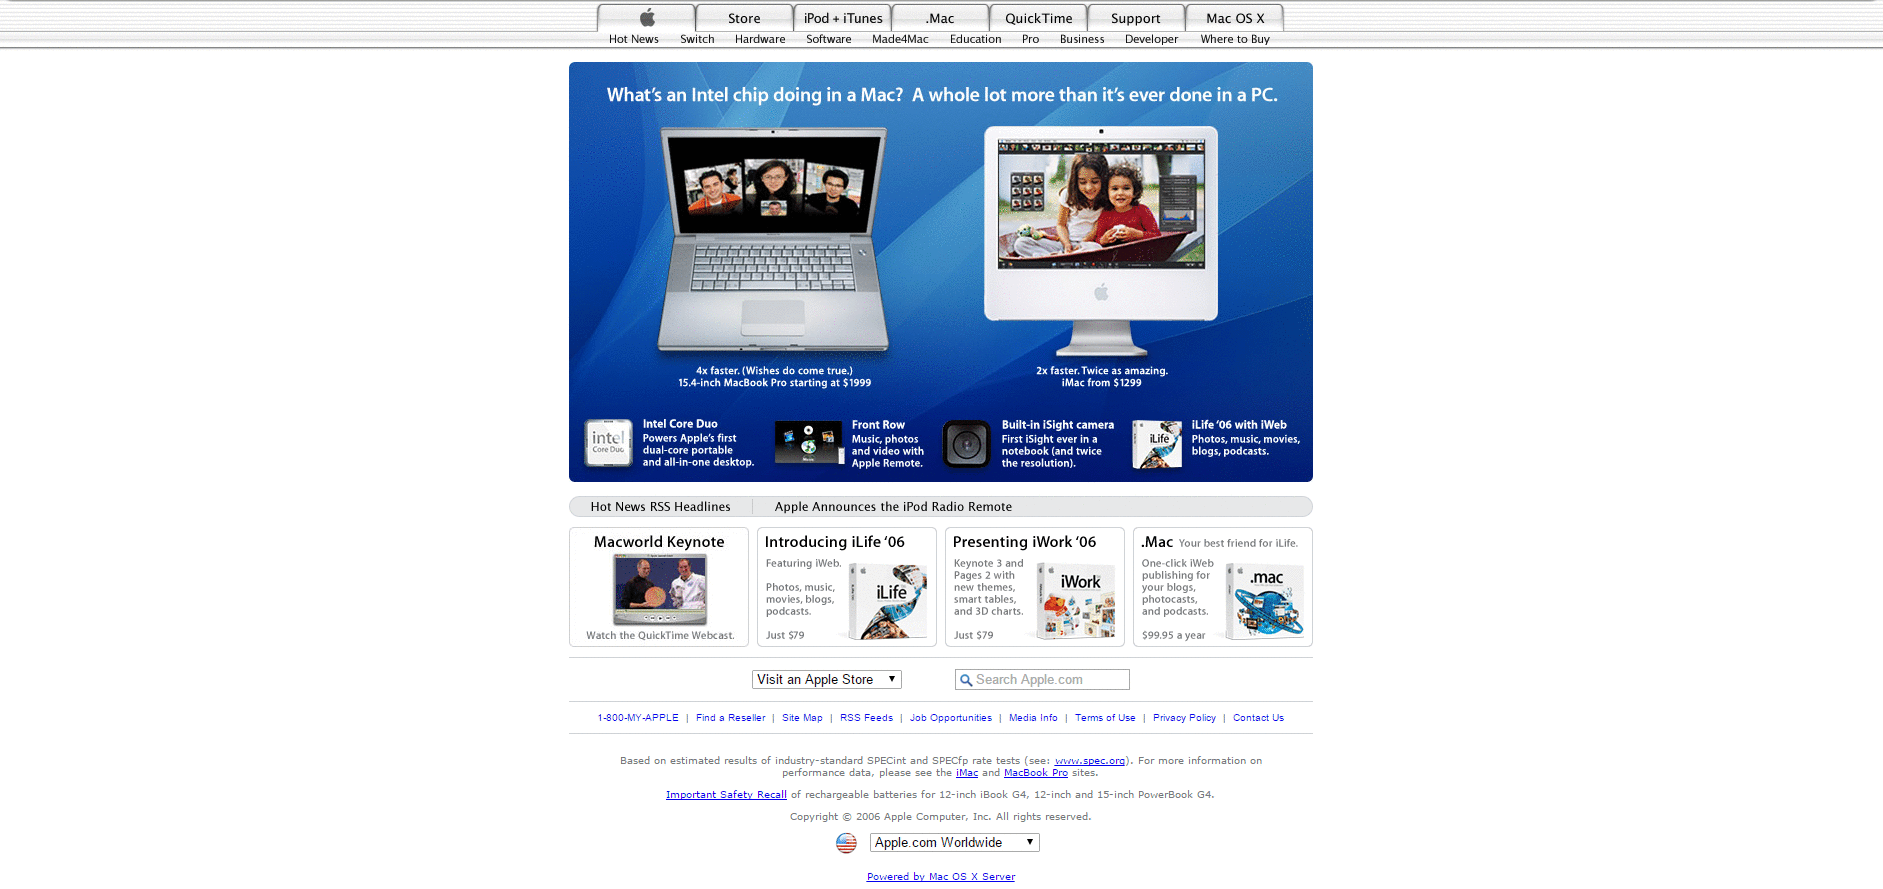 Website Design for apple.com in 2006